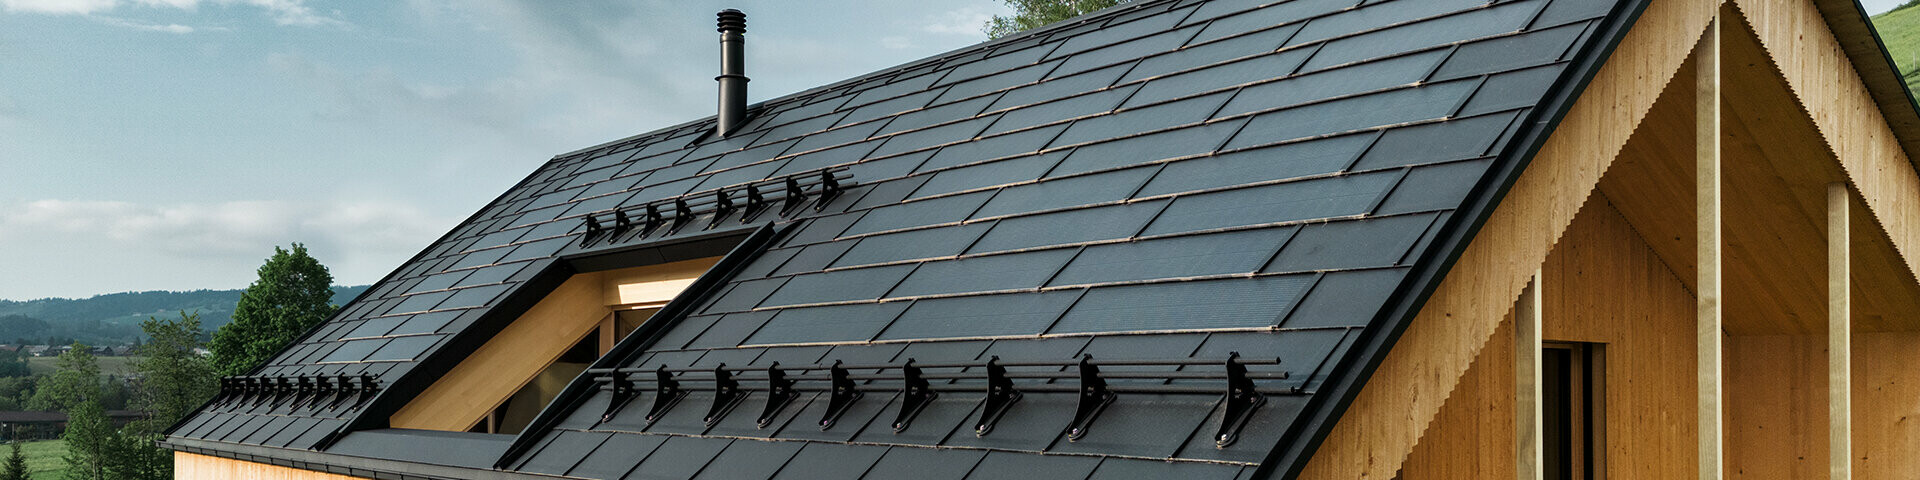 Solarna strešna plošča PREFA v črni barvi na eko hiši v Eggu v Avstriji - trpežna, energetsko učinkovita in estetska za sodobno arhitekturo. Inovativna solarna strešna plošča združuje streho, odporno proti nevihtam, s fotovoltaičnim sistemom. Vgrajeni fotovoltaični moduli se harmonično zlijejo s streho samostojne hiše.